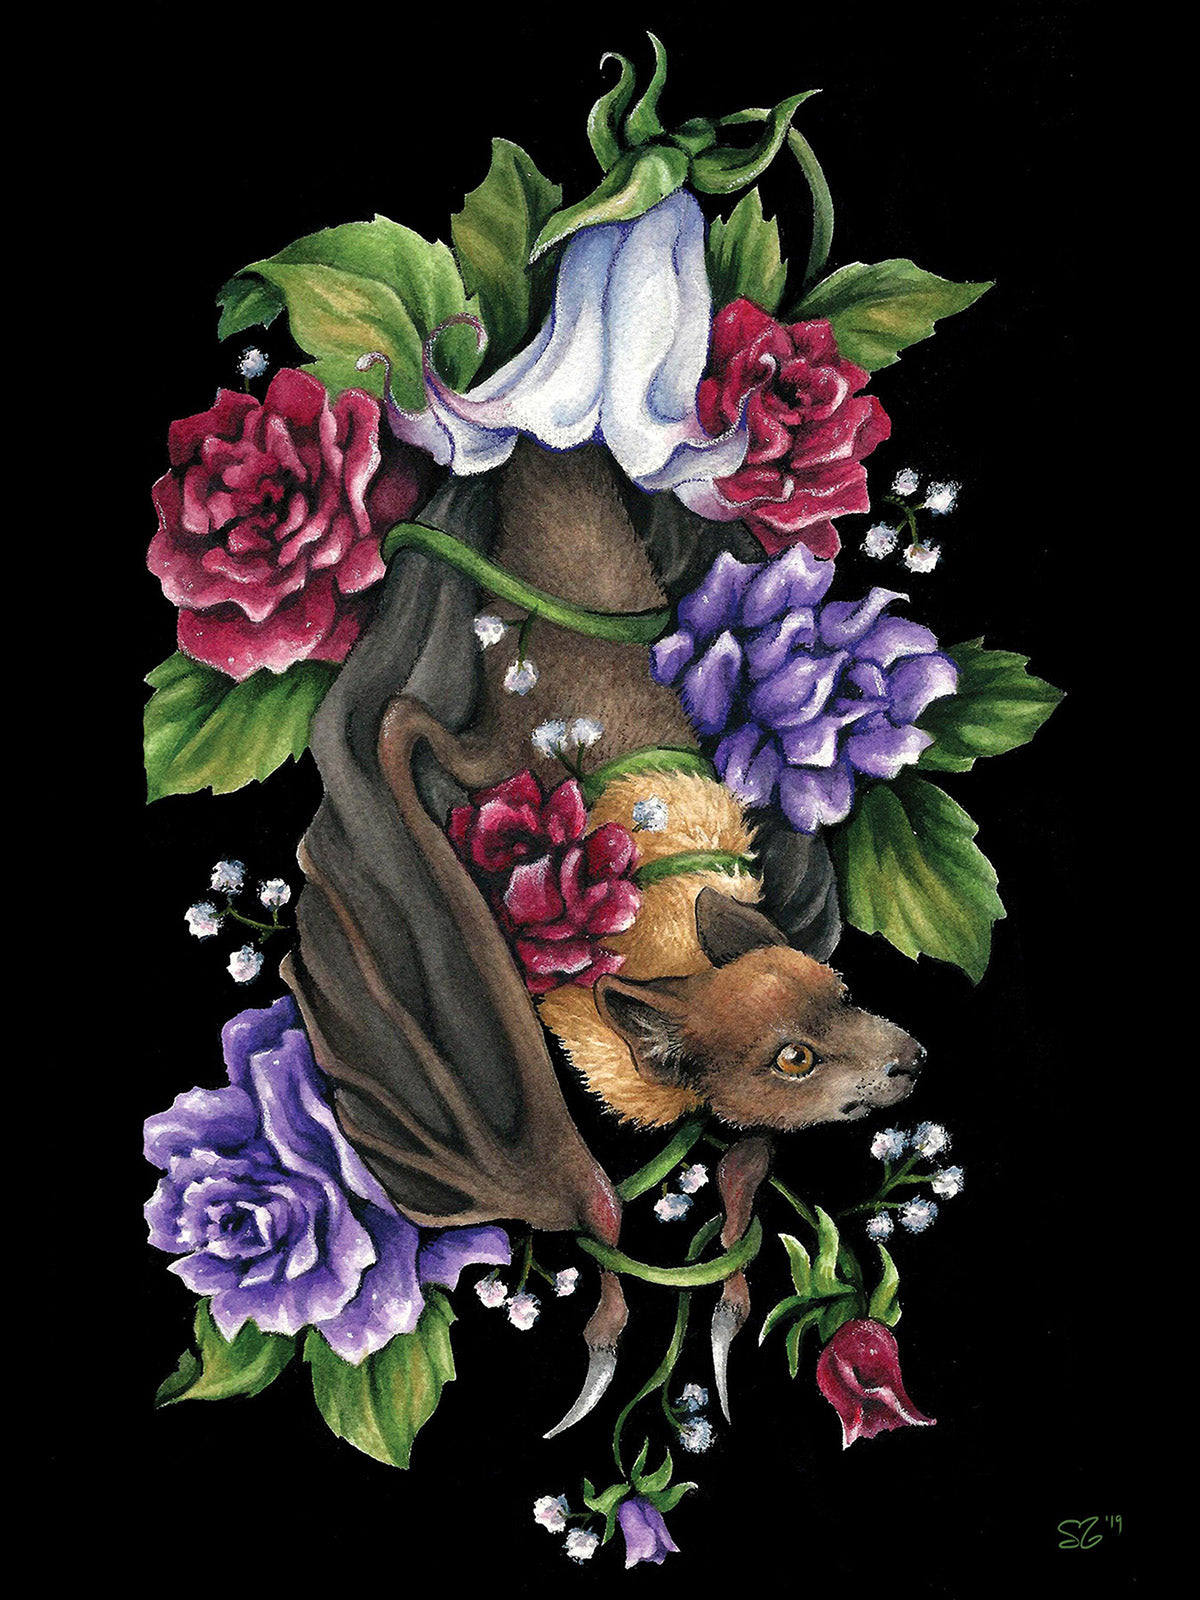 Steph Stevenson "Forbidden Fruit Bat"